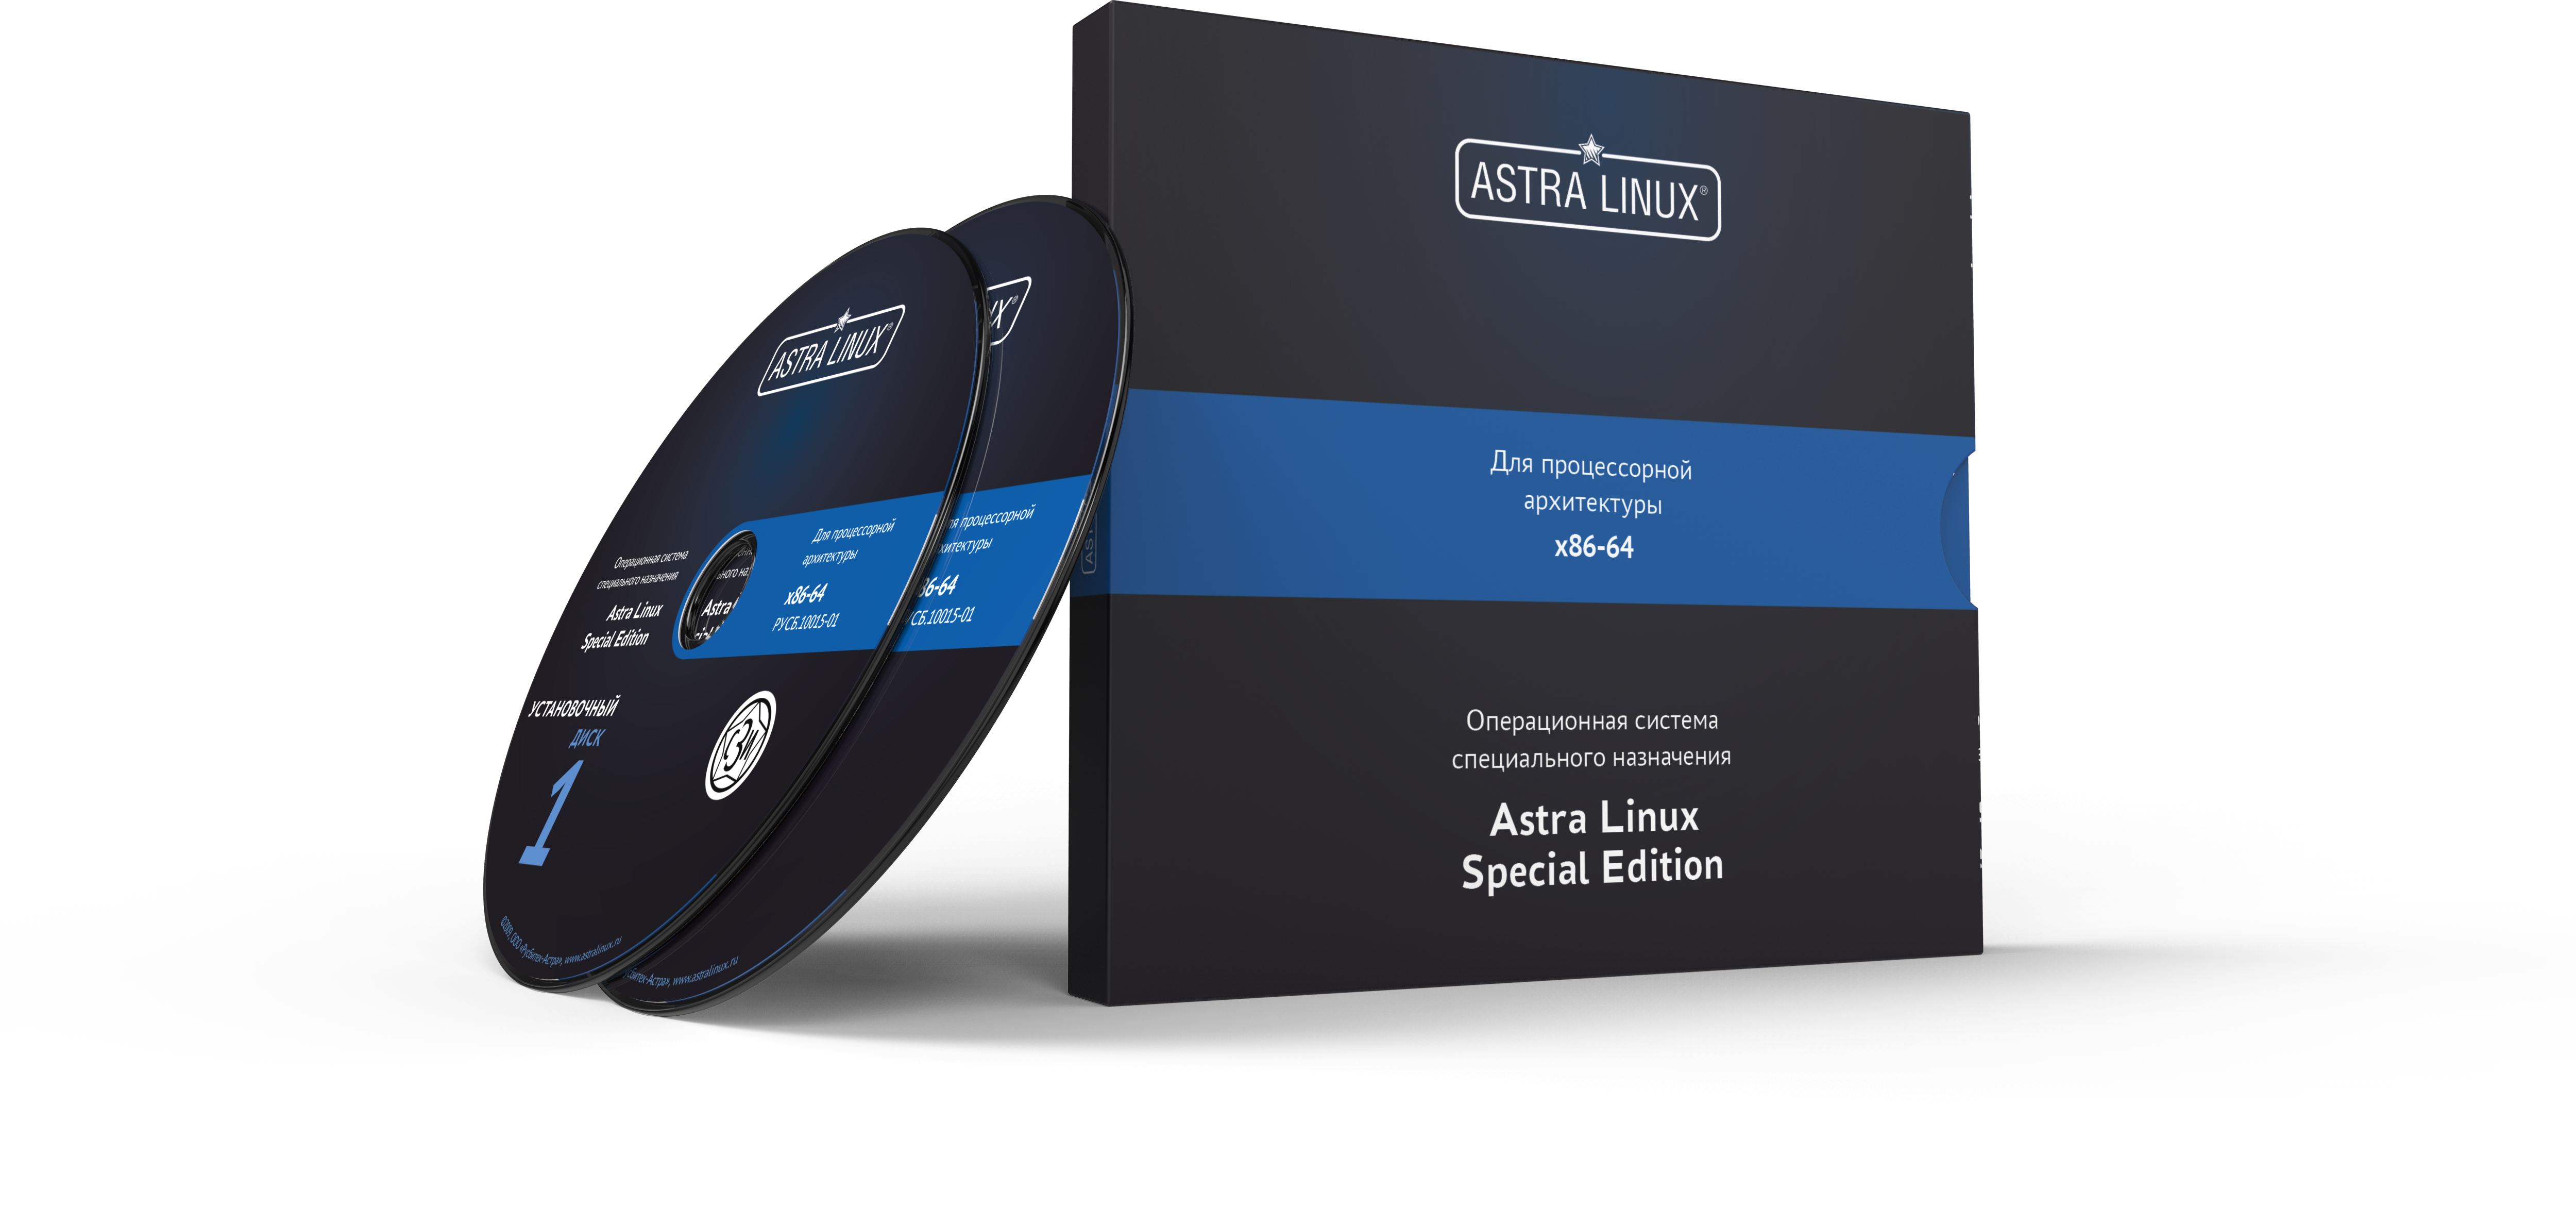 Astra Linux Special Edition 1.7 - Воронеж, РУСБ.10015-01 (ФСТЭК), диск, без огр. срока, ТП "Привилегированная" 24 мес.